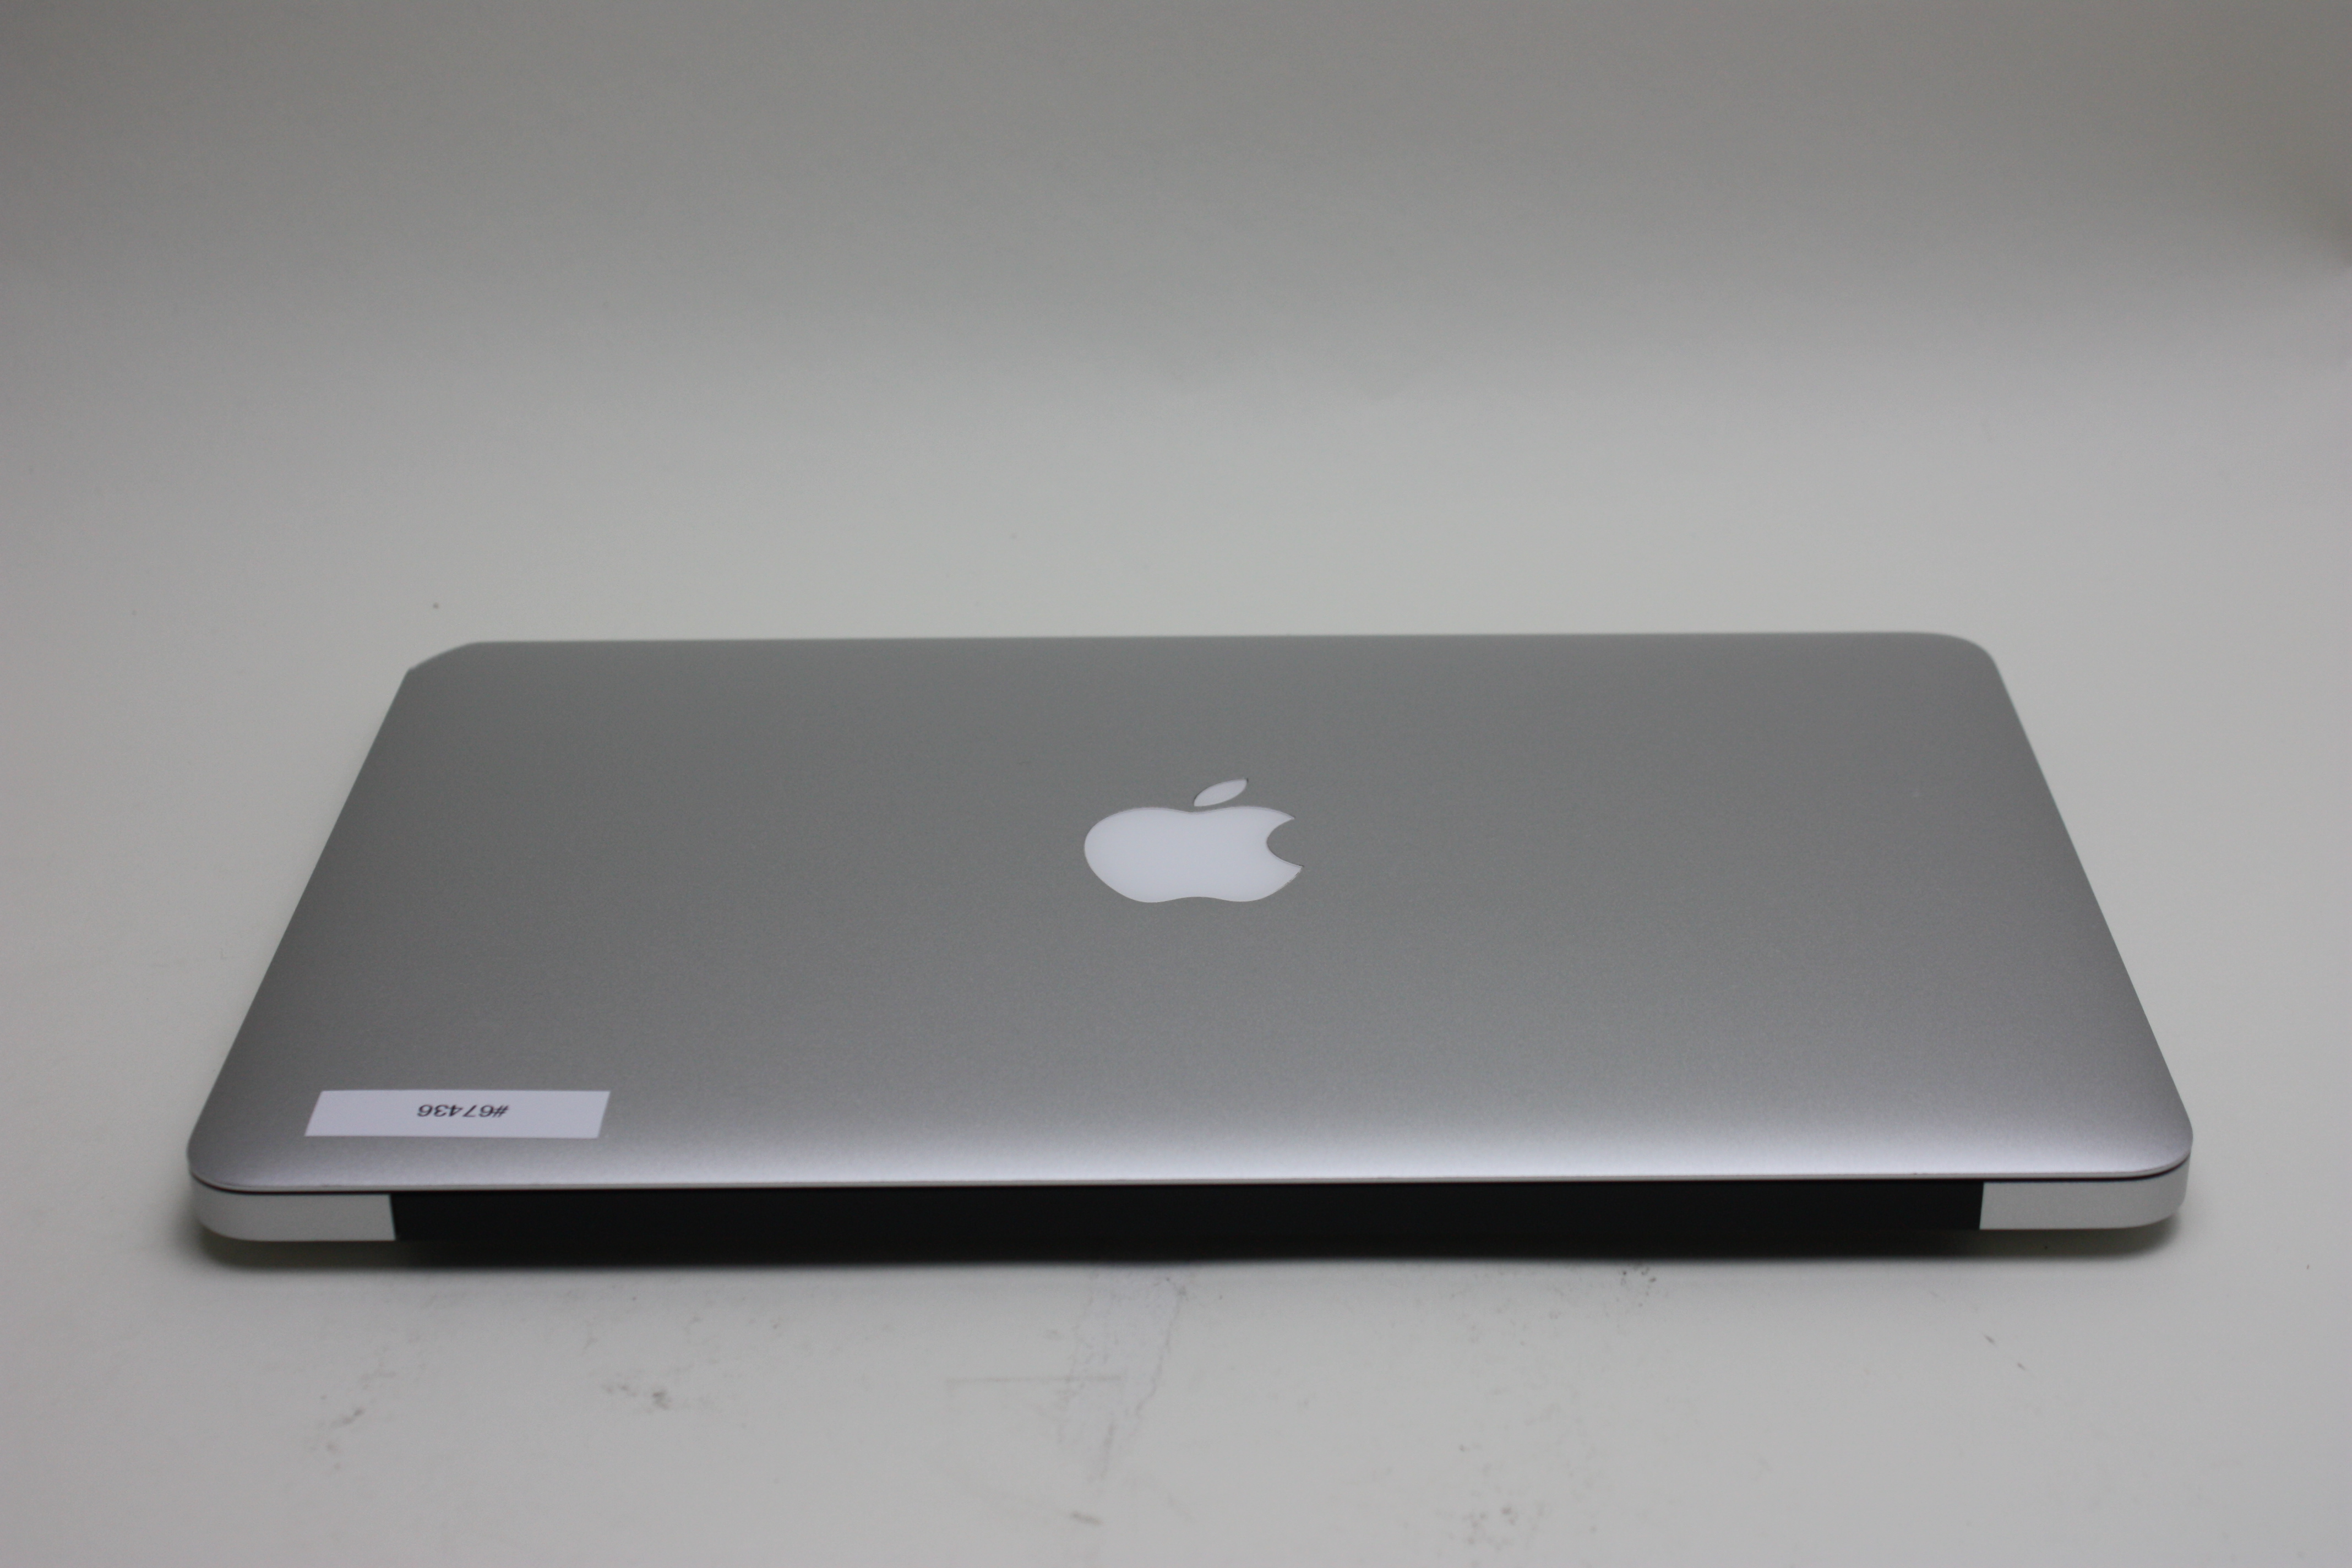 macbook 11 inch 1.6ghz core i5 processor